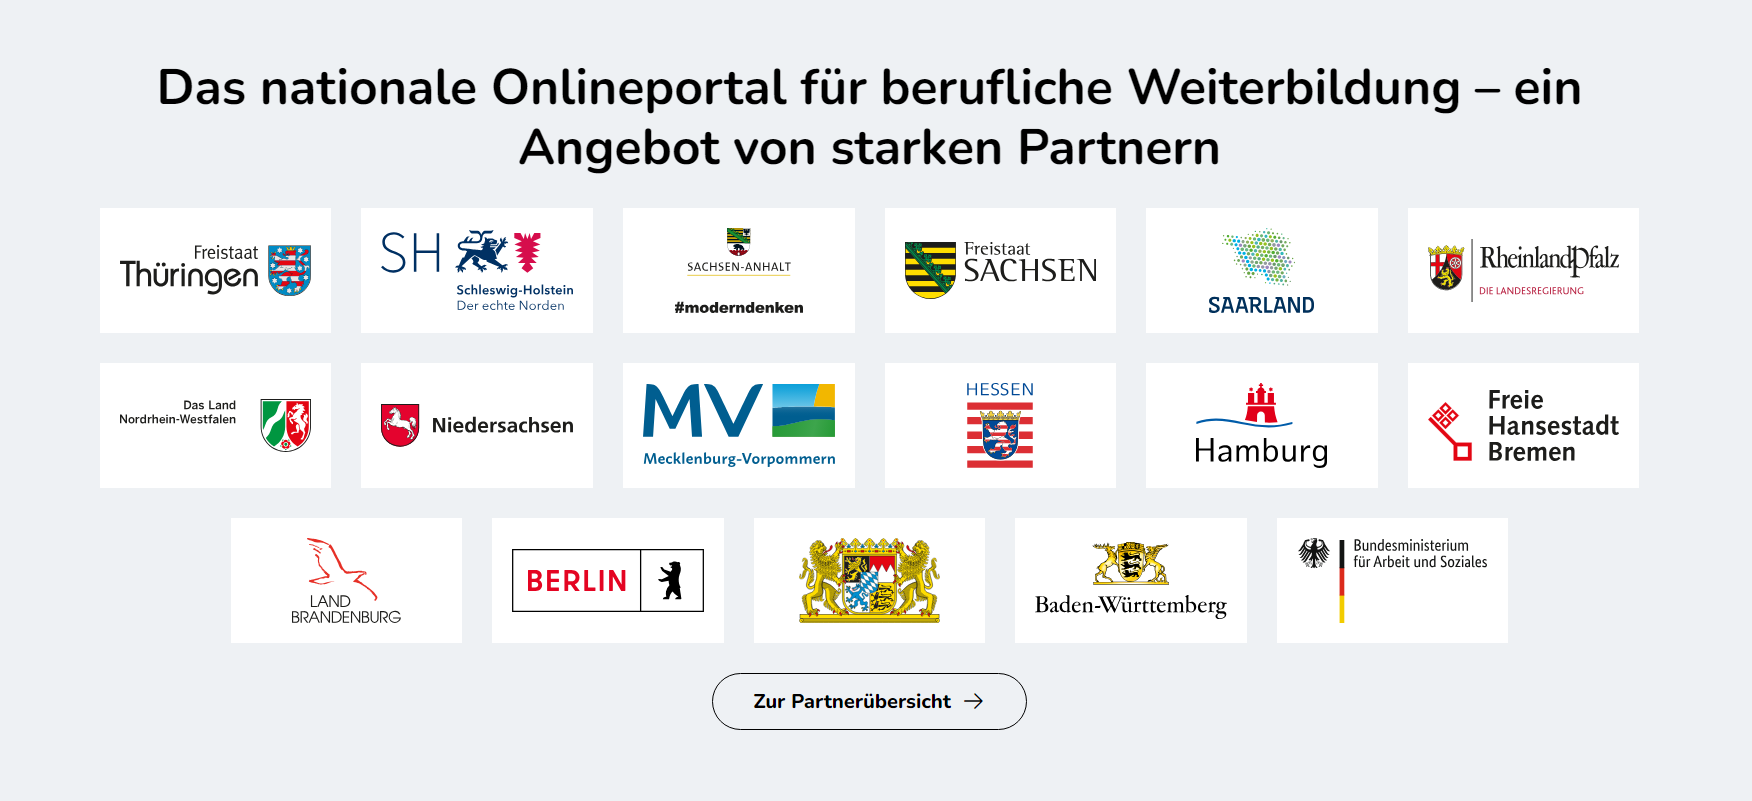 Bildschirmausschnitt der Webseite mein NOW mit einer Übersicht über die Logos aller Partner